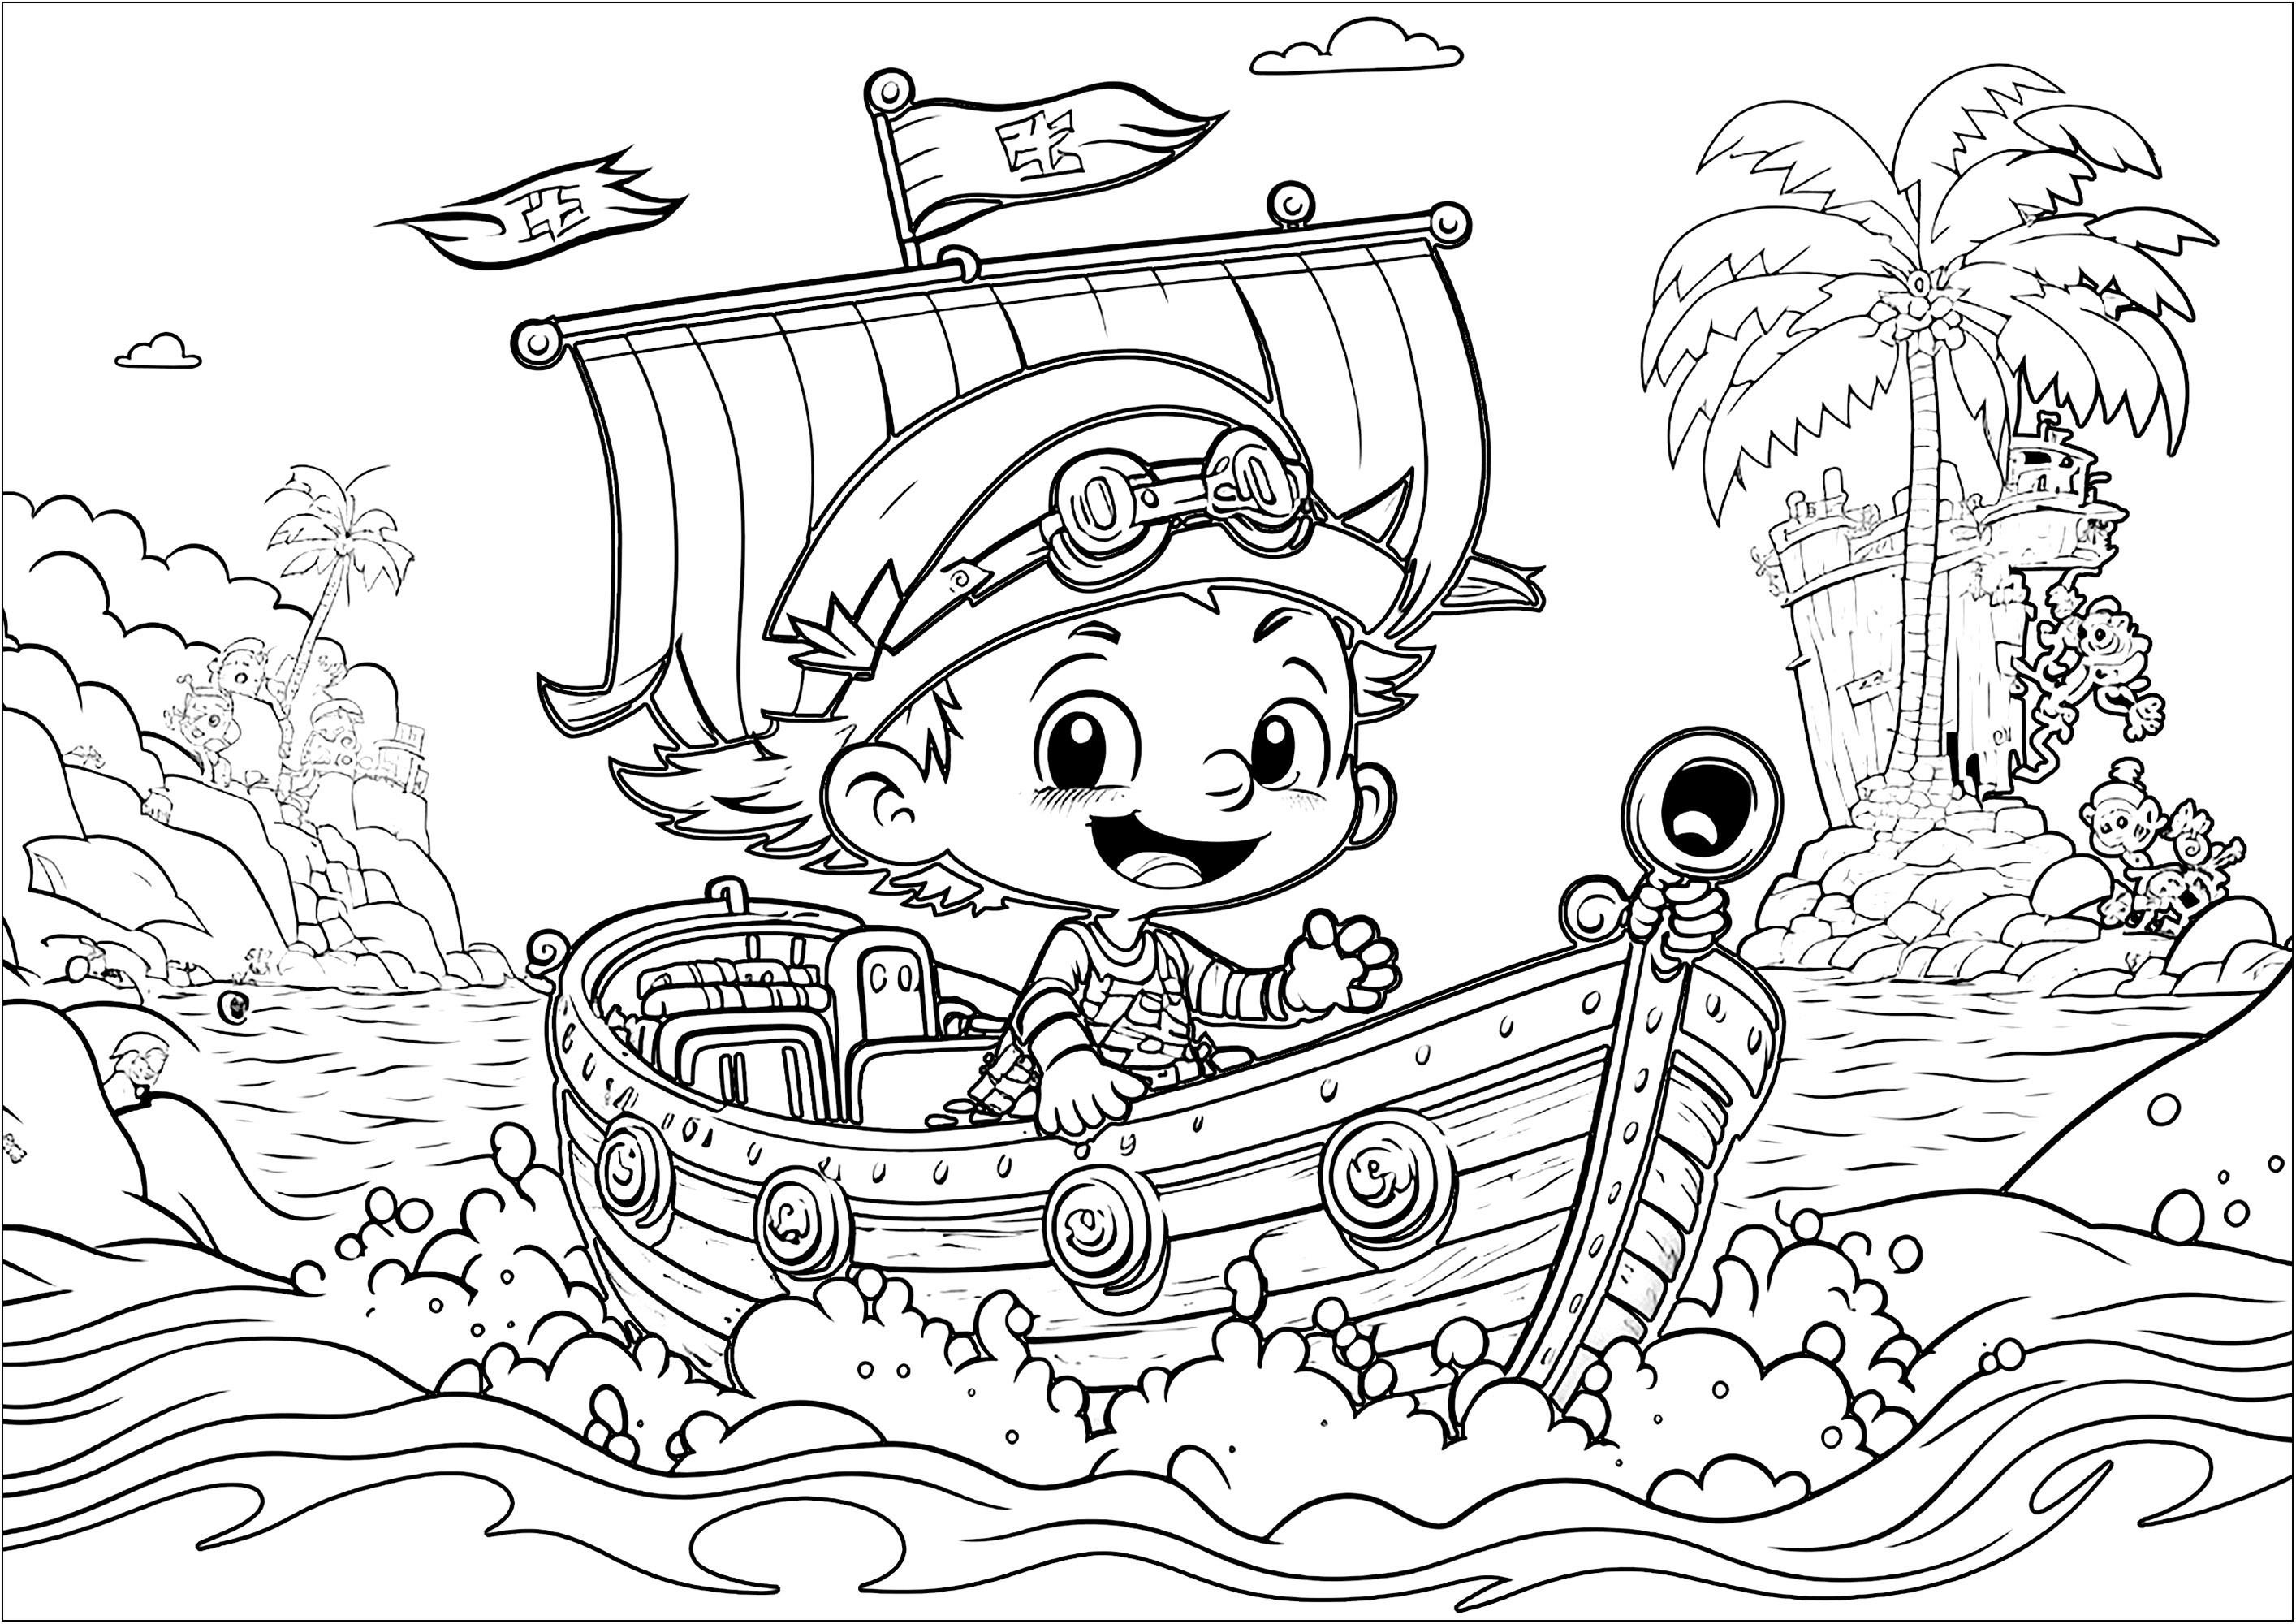 Un gentil pirate à colorier, en route vers de nouvelles aventures à bord de son beau bateau. Le style de ce coloriage se rapproche des personnages Disney / Pixar.Les enfants pourront imaginer des histoires et des aventures de pirates tout en coloriant.